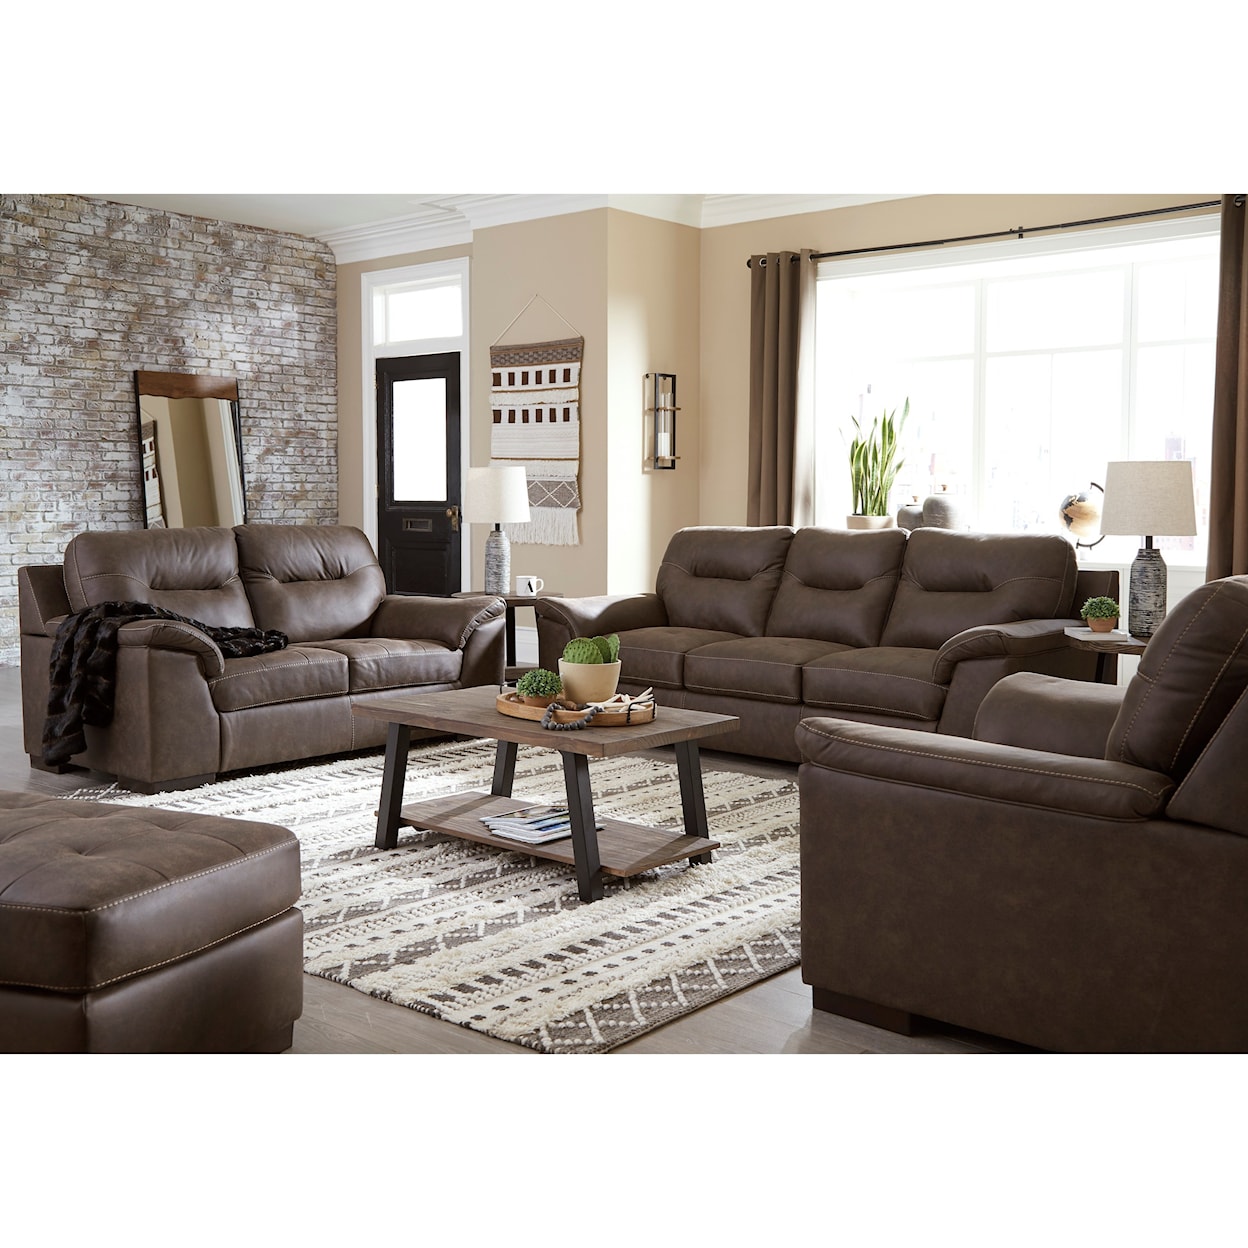 Ashley Furniture Signature Design Maderla Living Room Group